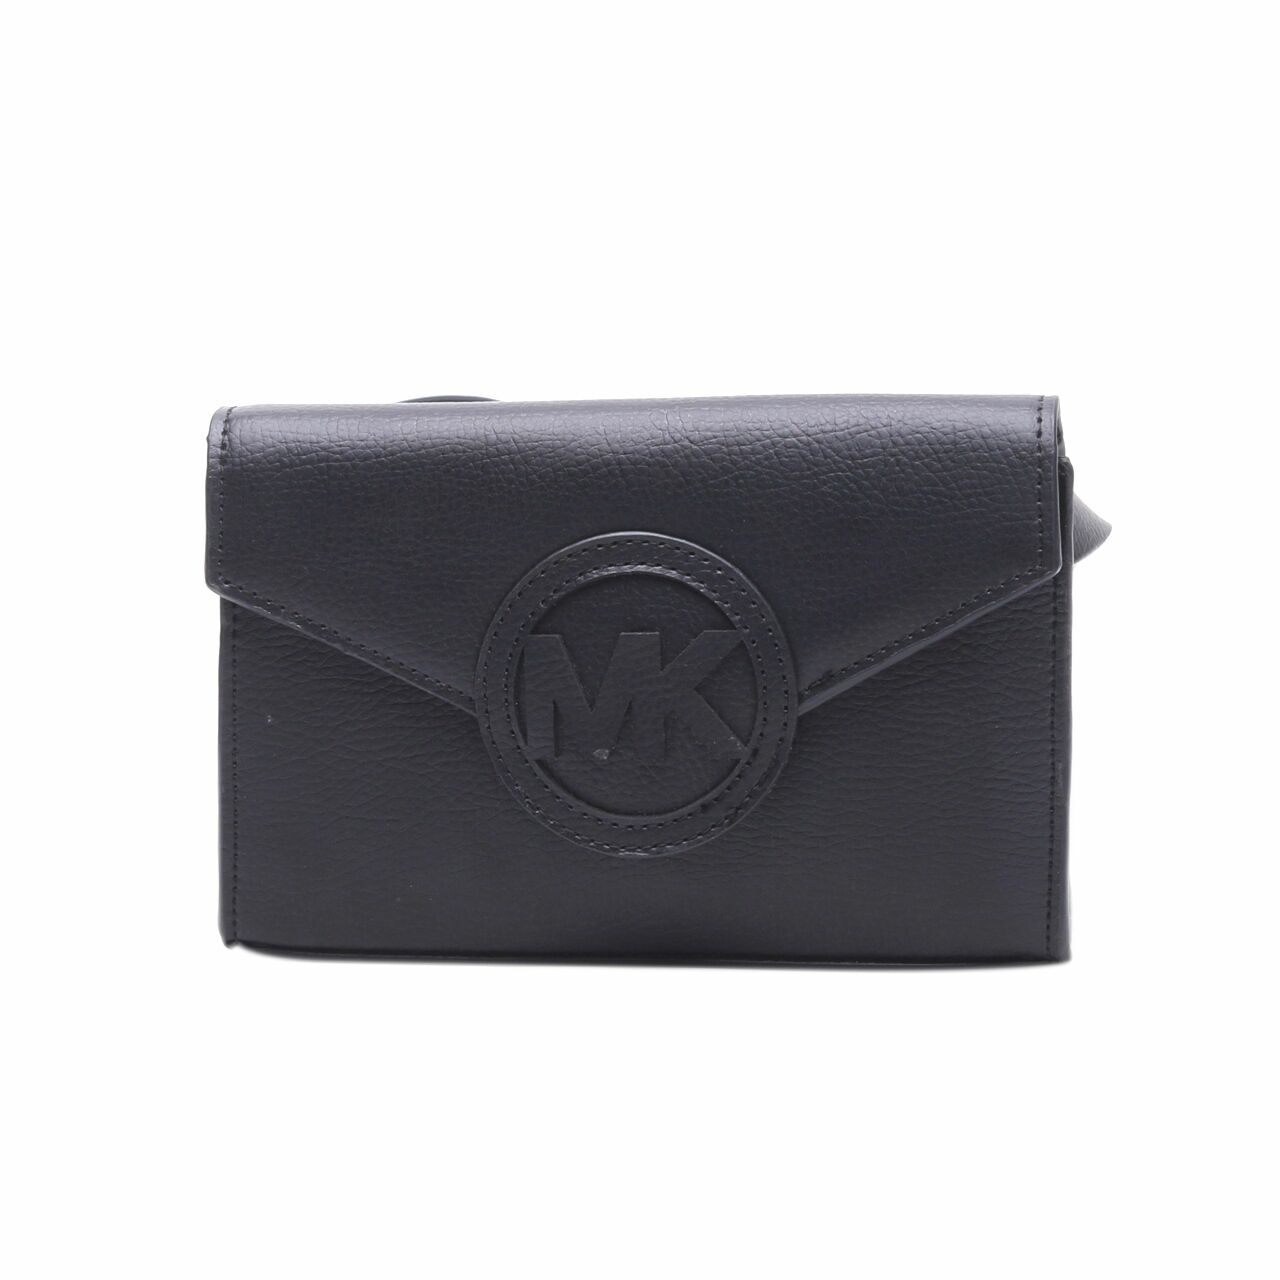 Michael Kors Black Leather Belt Bag